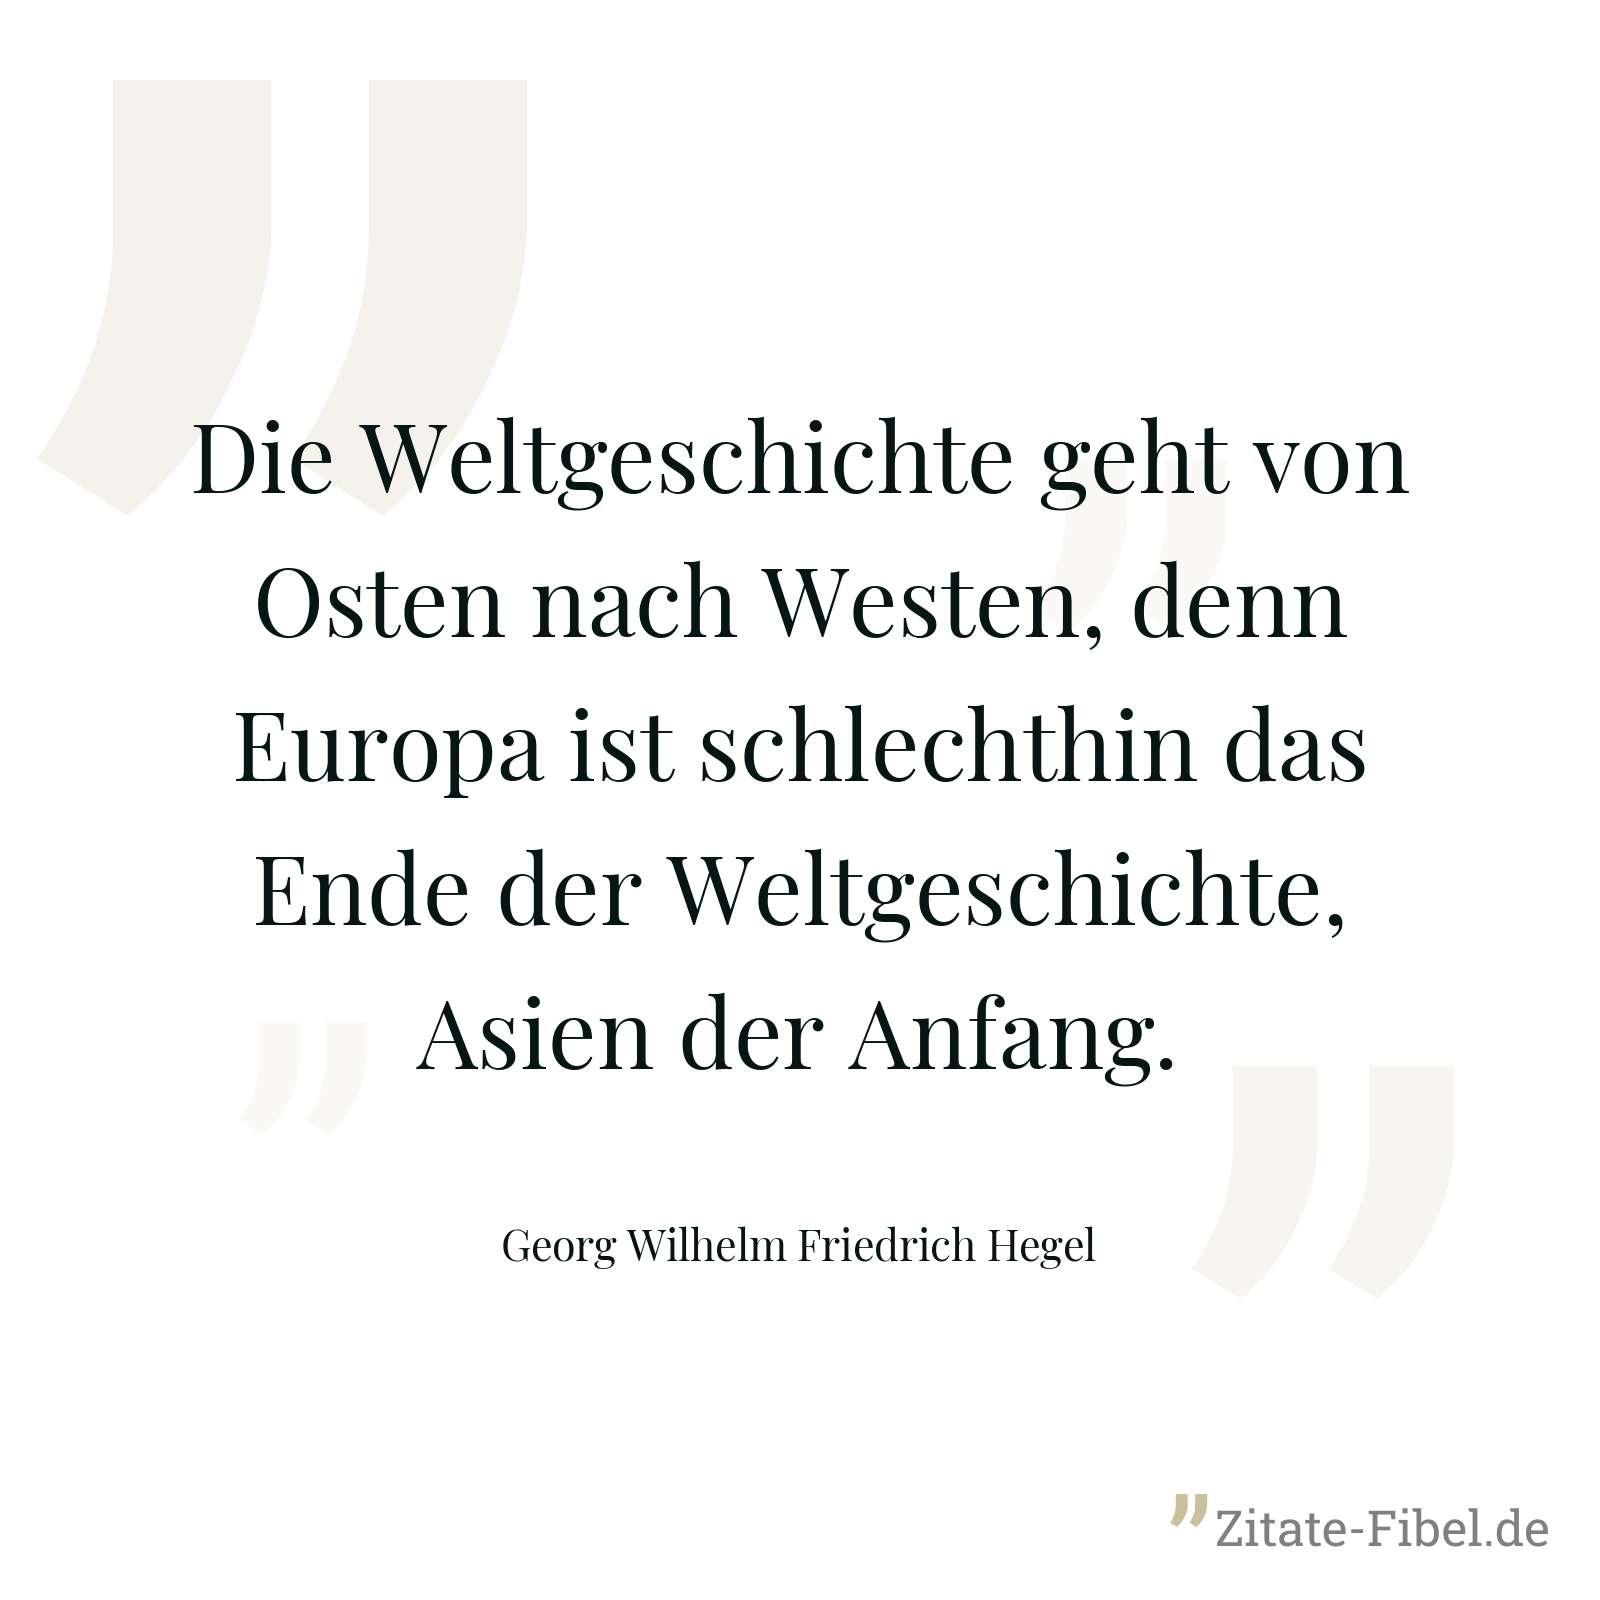 Die Weltgeschichte geht von Osten nach Westen, denn Europa ist schlechthin das Ende der Weltgeschichte, Asien der Anfang. - Georg Wilhelm Friedrich Hegel